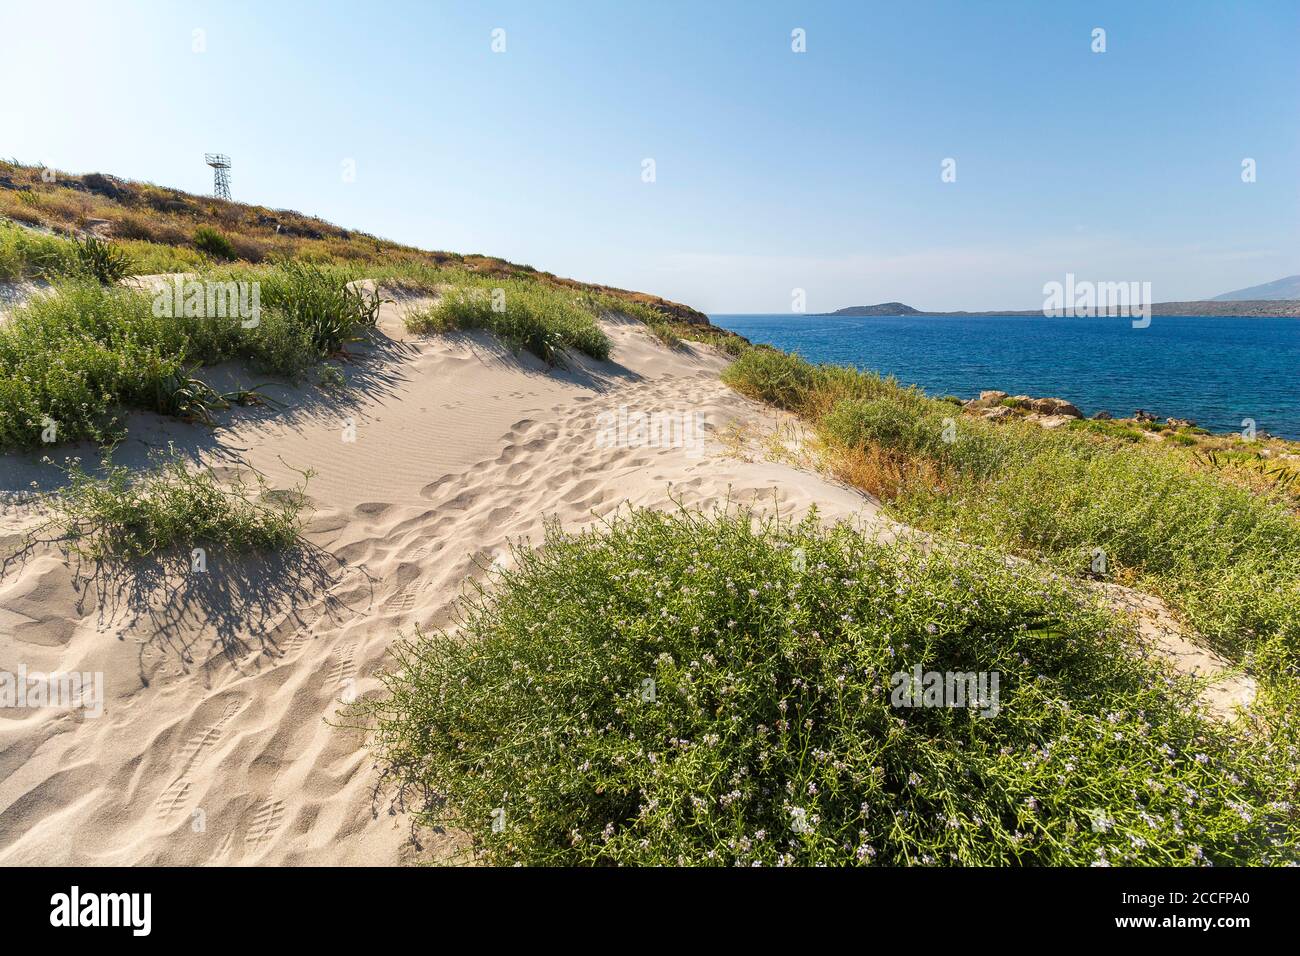 Dunes de sable sur la péninsule d'Elafonisi sur la plage d'Elafonissi au sable rose, sud-ouest de la Crète, Grèce Banque D'Images